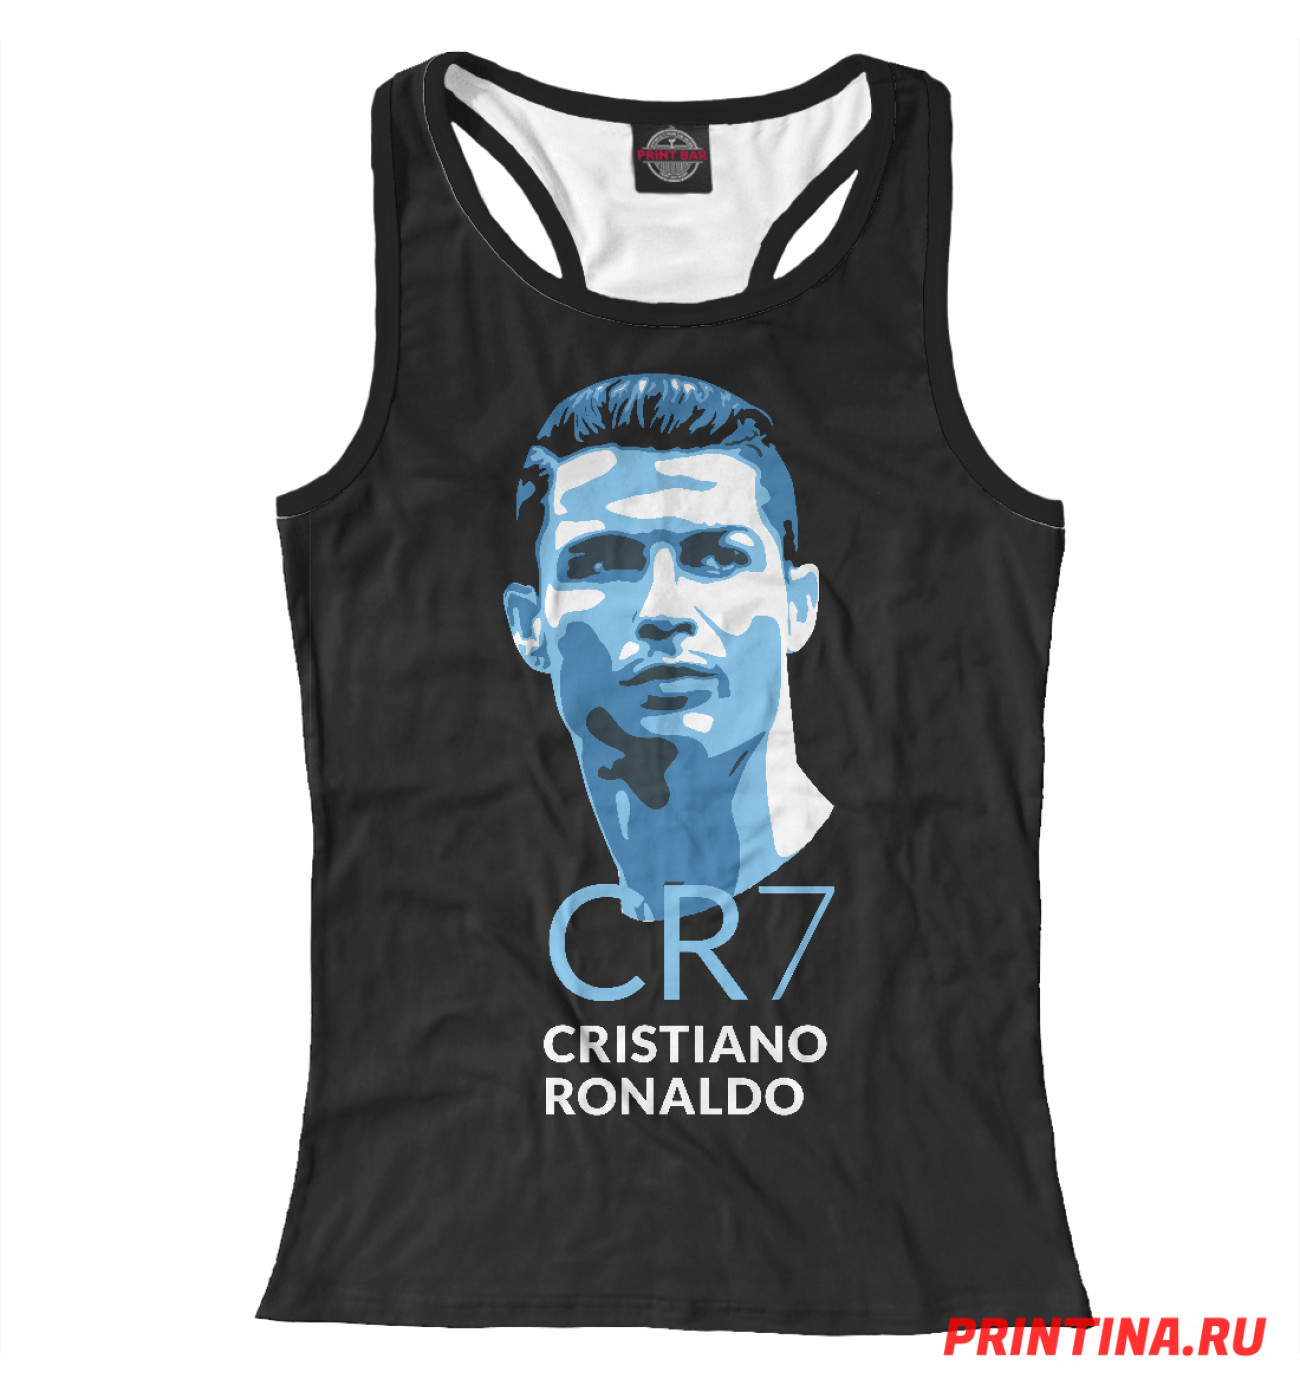 Женская Борцовка Cristiano Ronaldo, артикул: CRR-508879-mayb-1